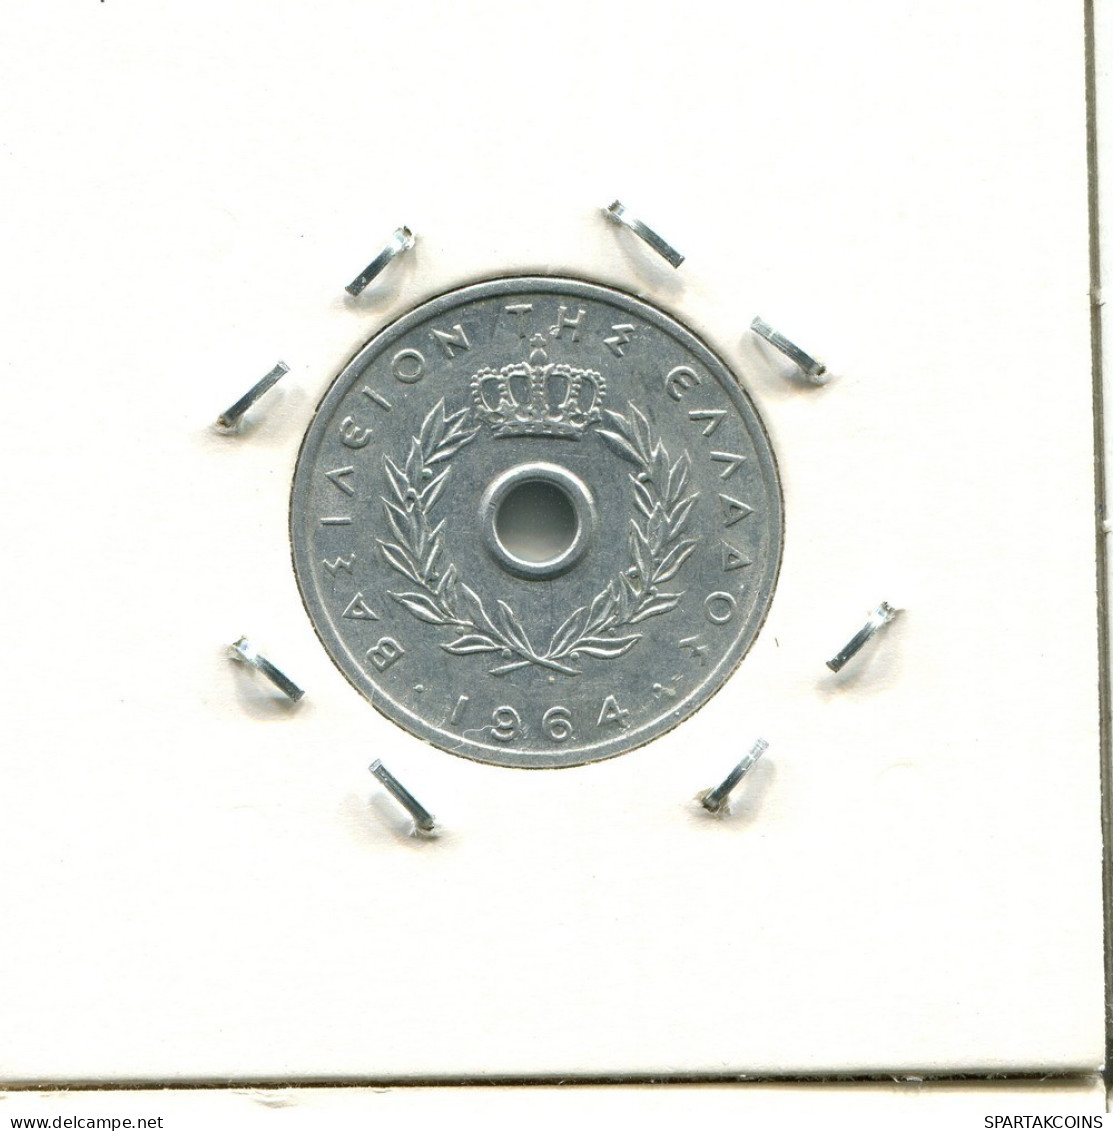 10 LEPTA 1964 GRIECHENLAND GREECE Münze #AS425.D.A - Grèce